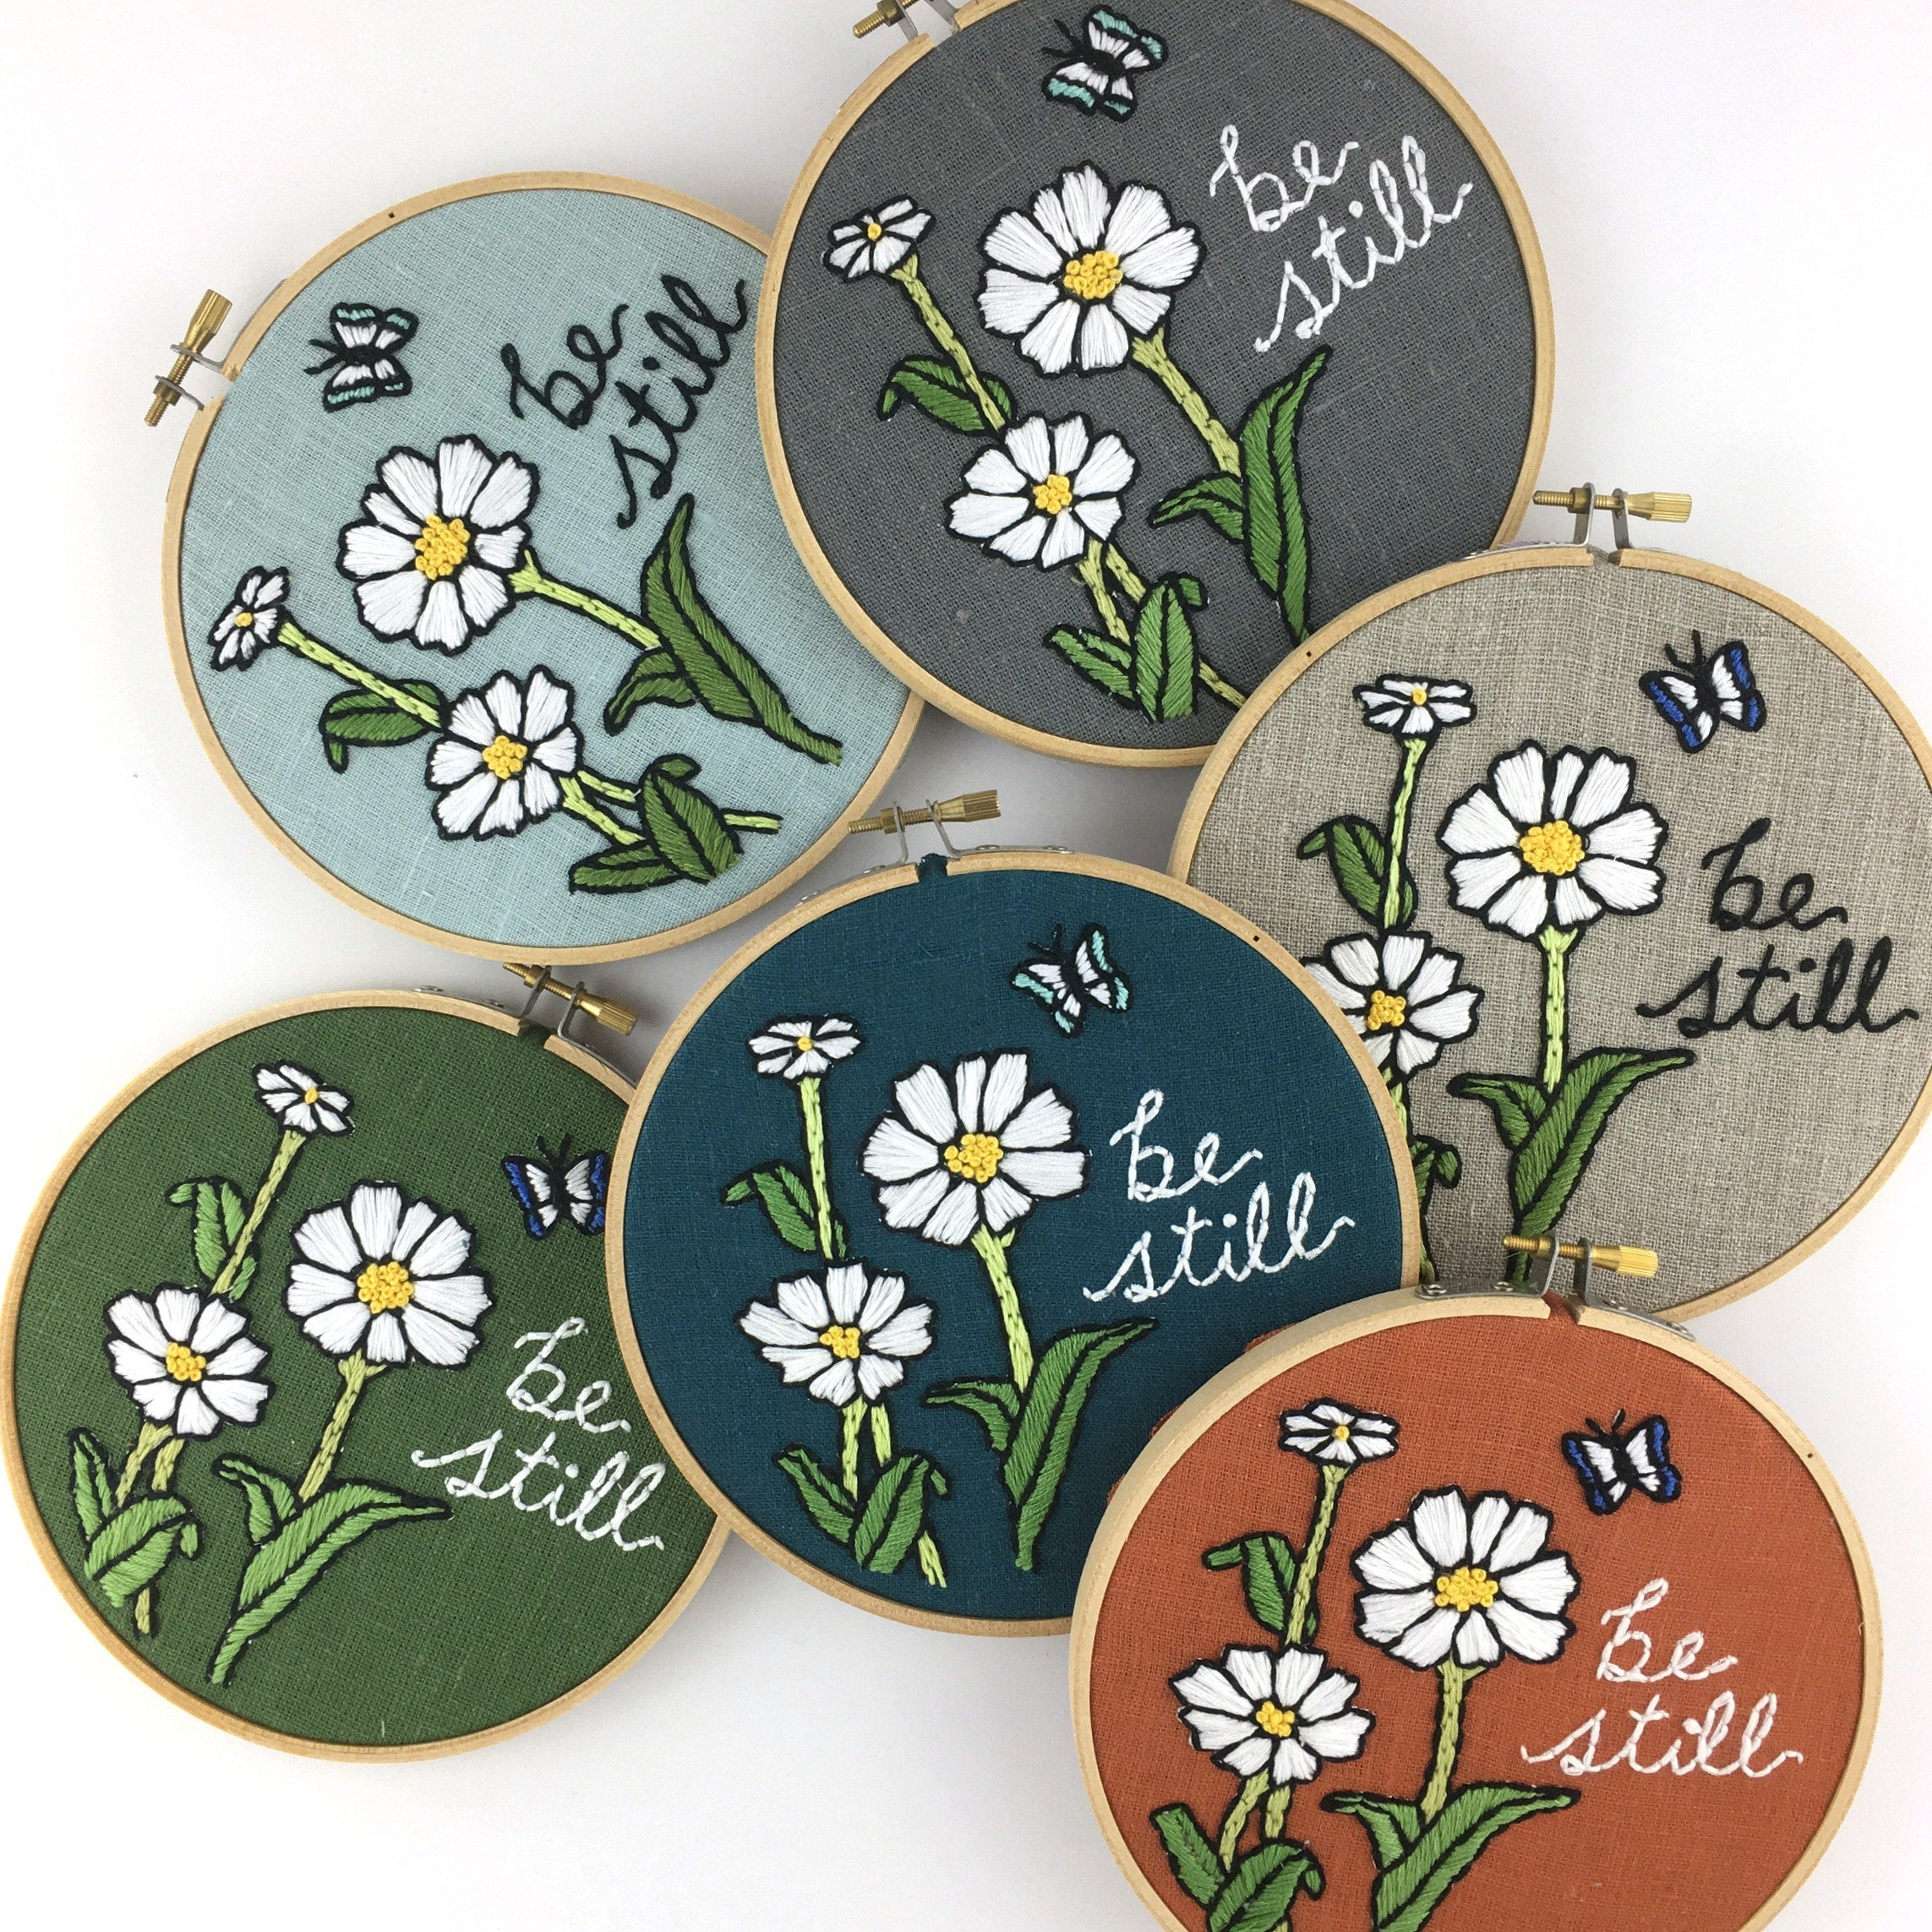 Beginner Embroidery Patterns Be Still Embroidery Kit Easy Beginner Embroidery Kit Floral